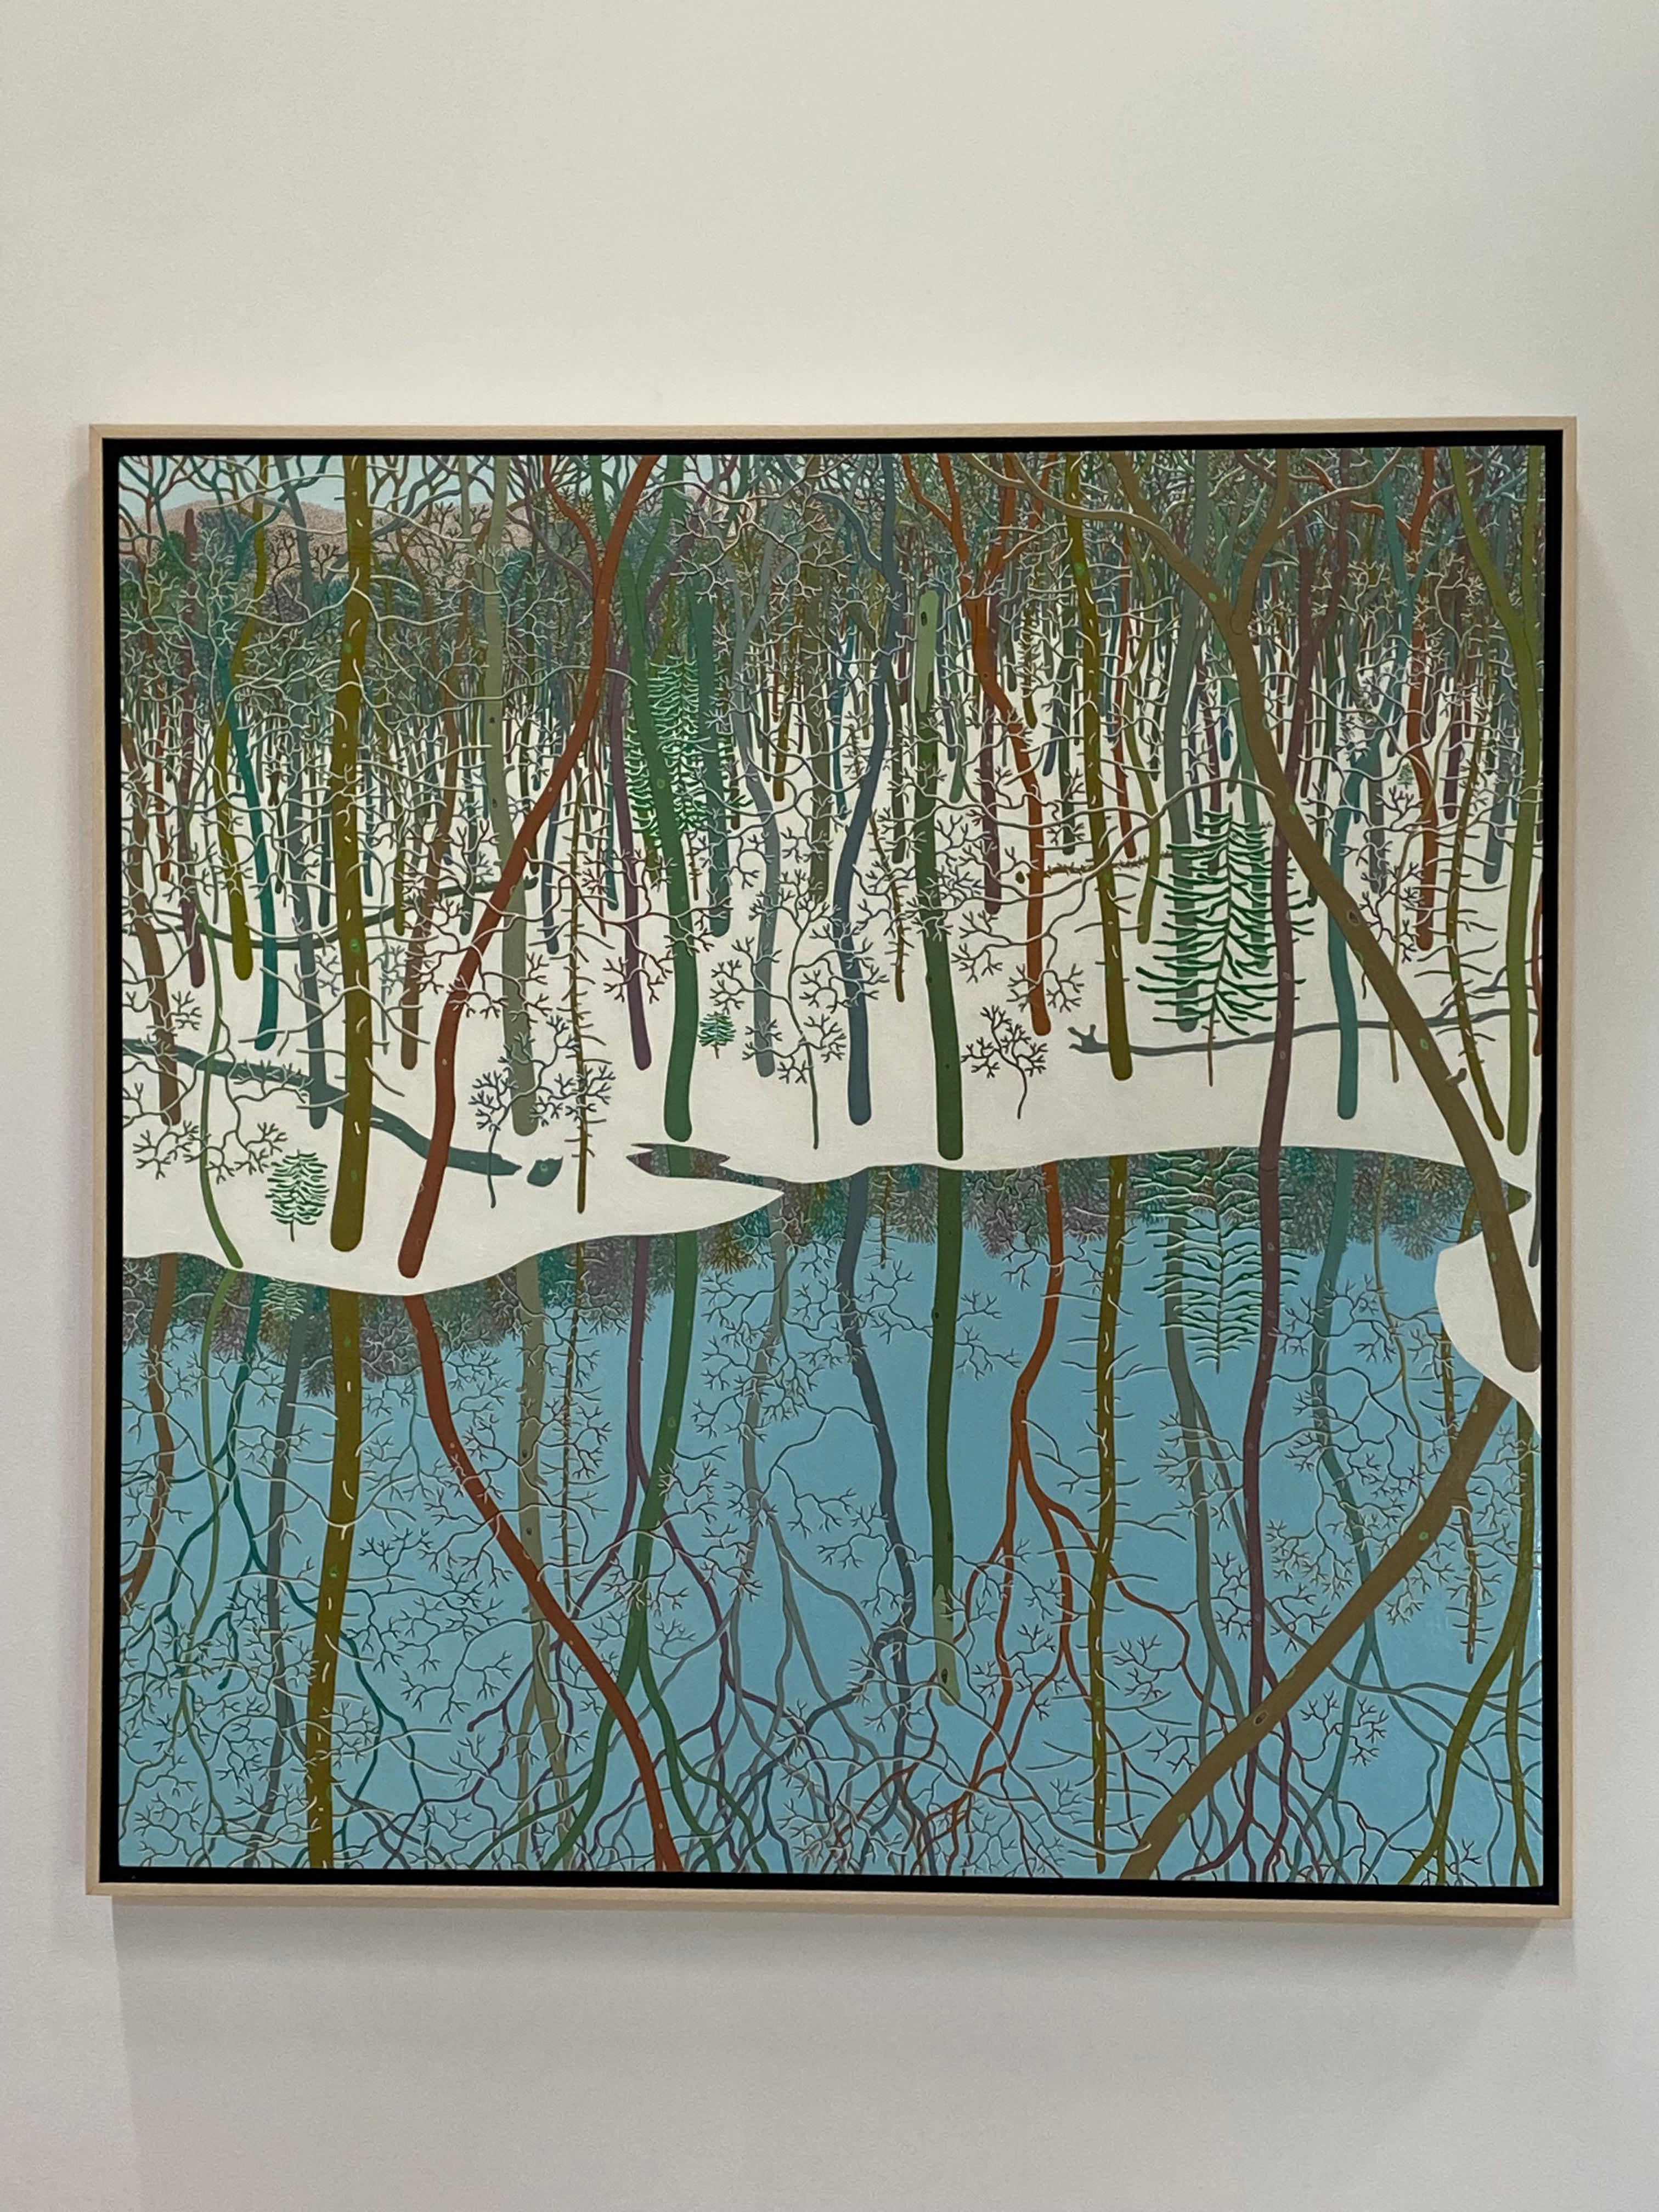 Wyatt Mt. Februar, Landschaft, Schneewälder, Wasser, Bäume, weißer Schnee – Painting von Gregory Hennen